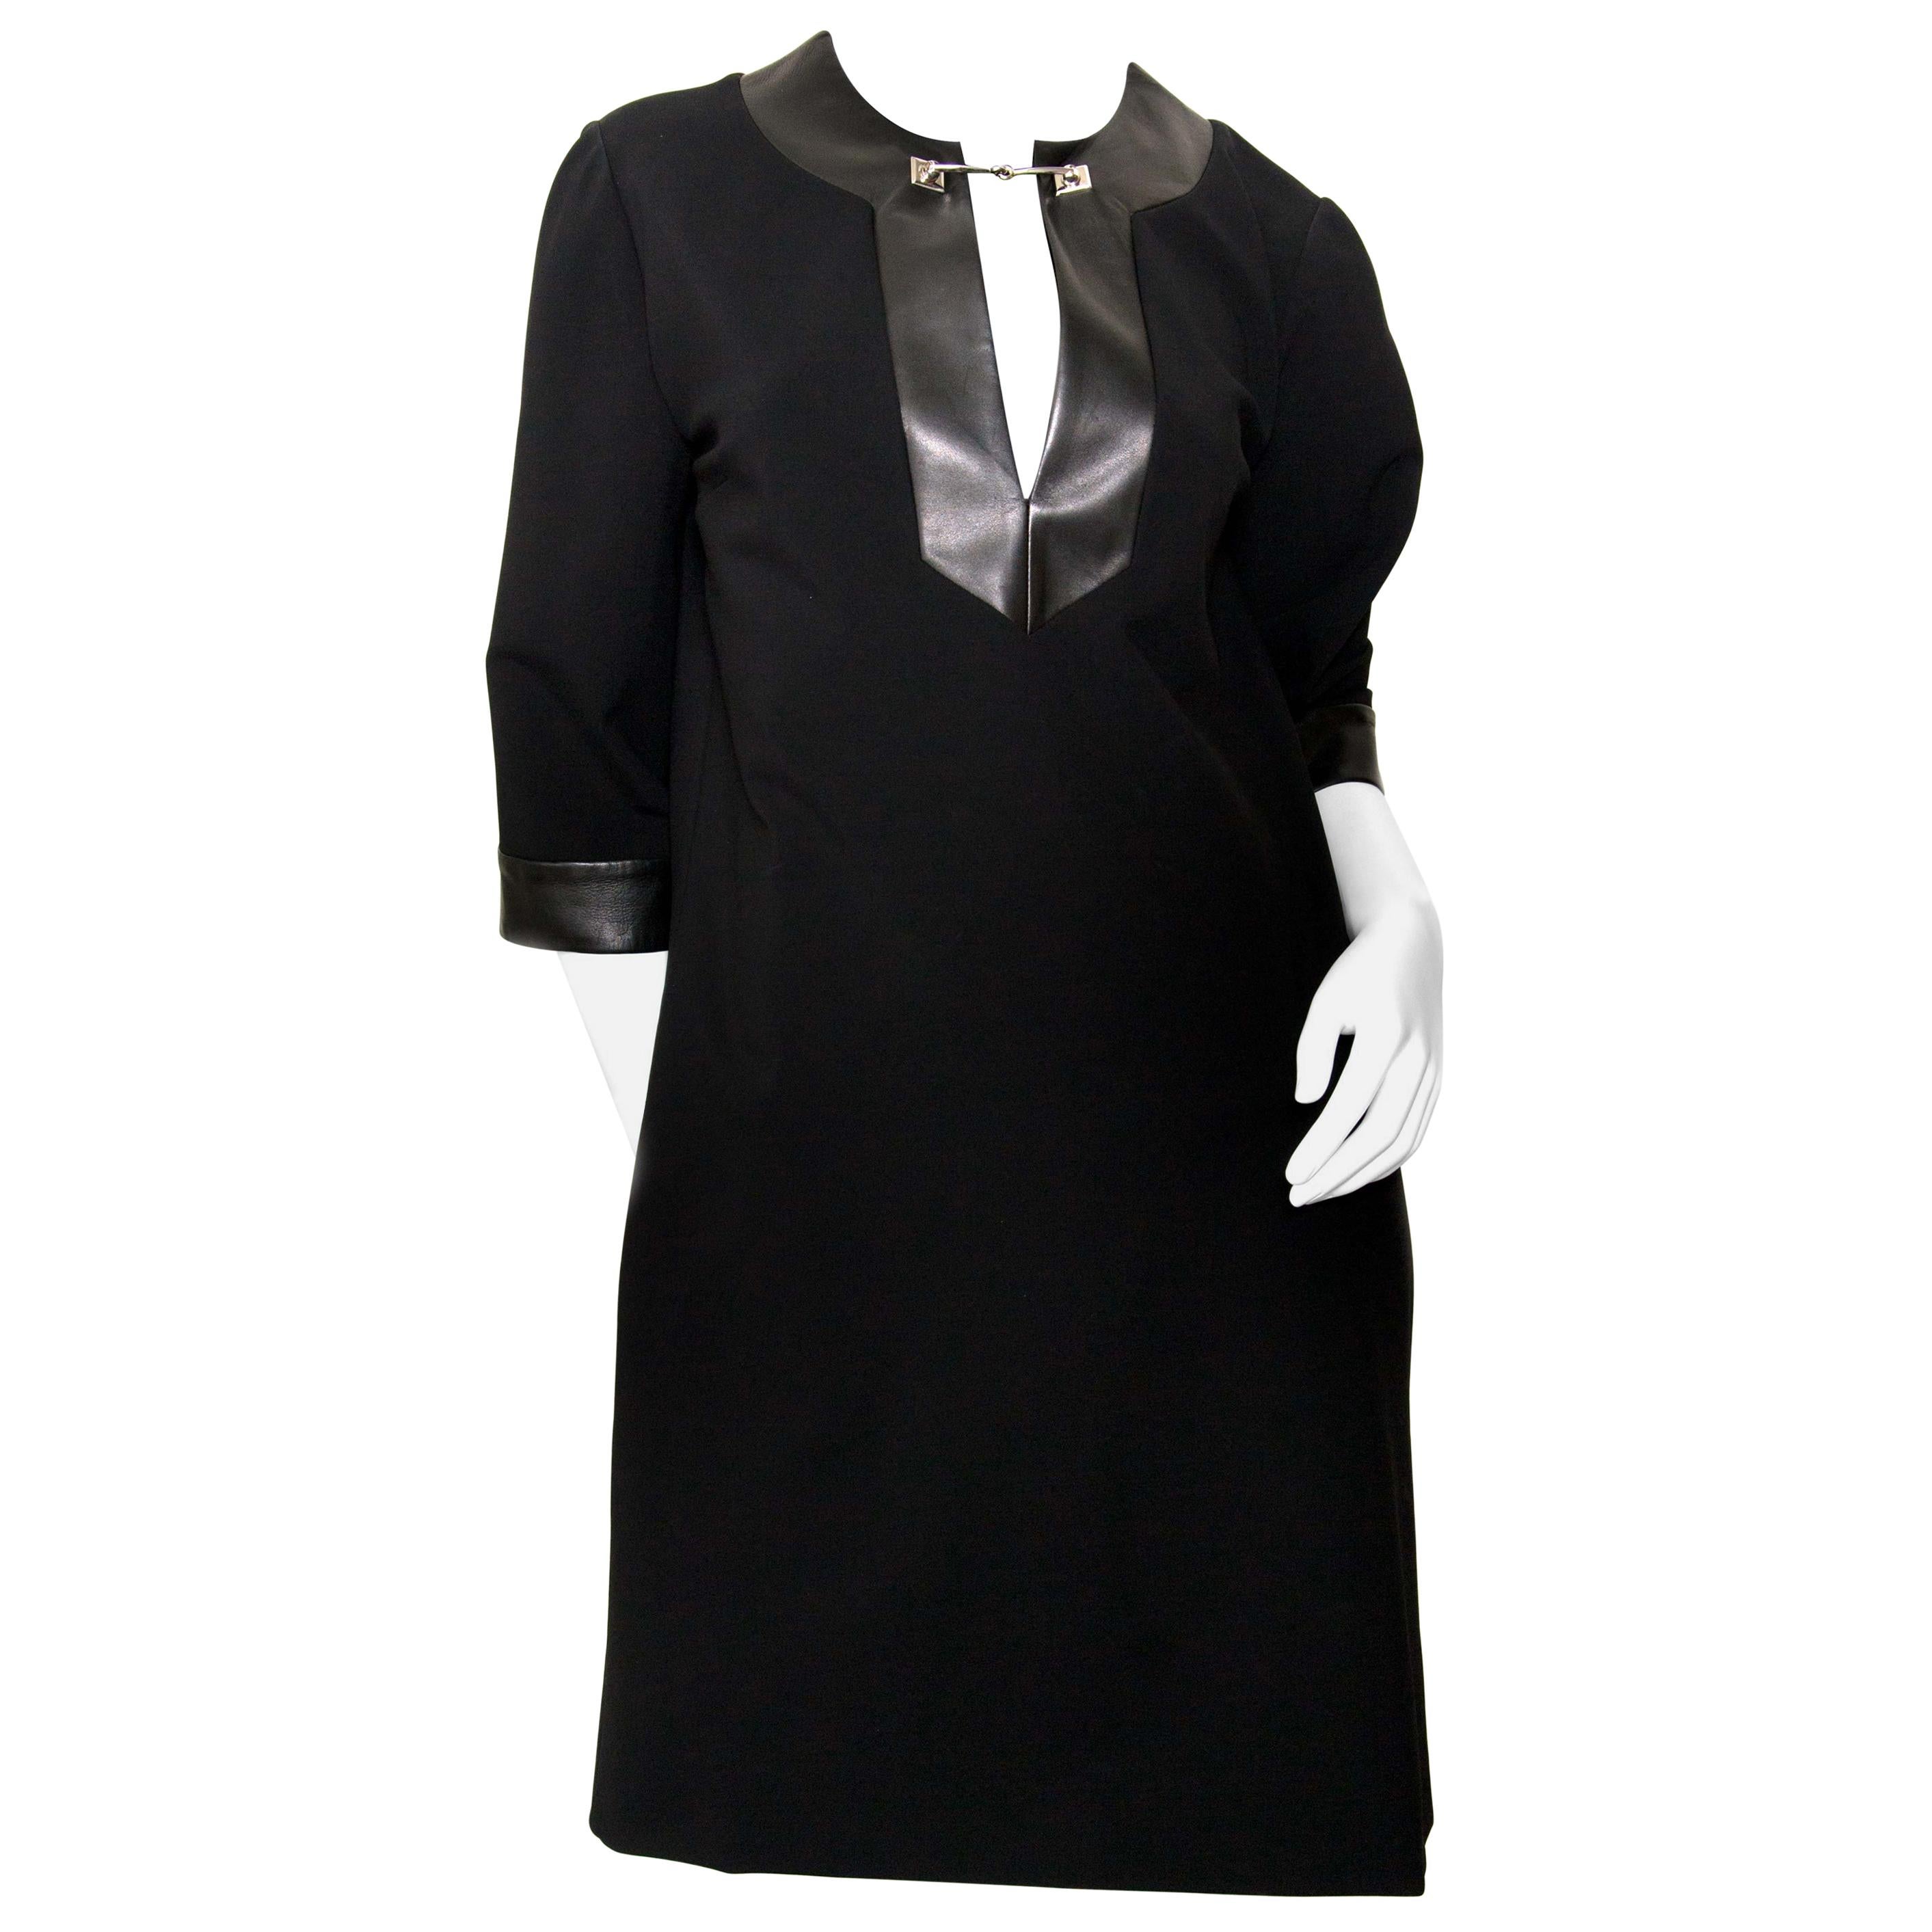 Gucci Black Dress - size L